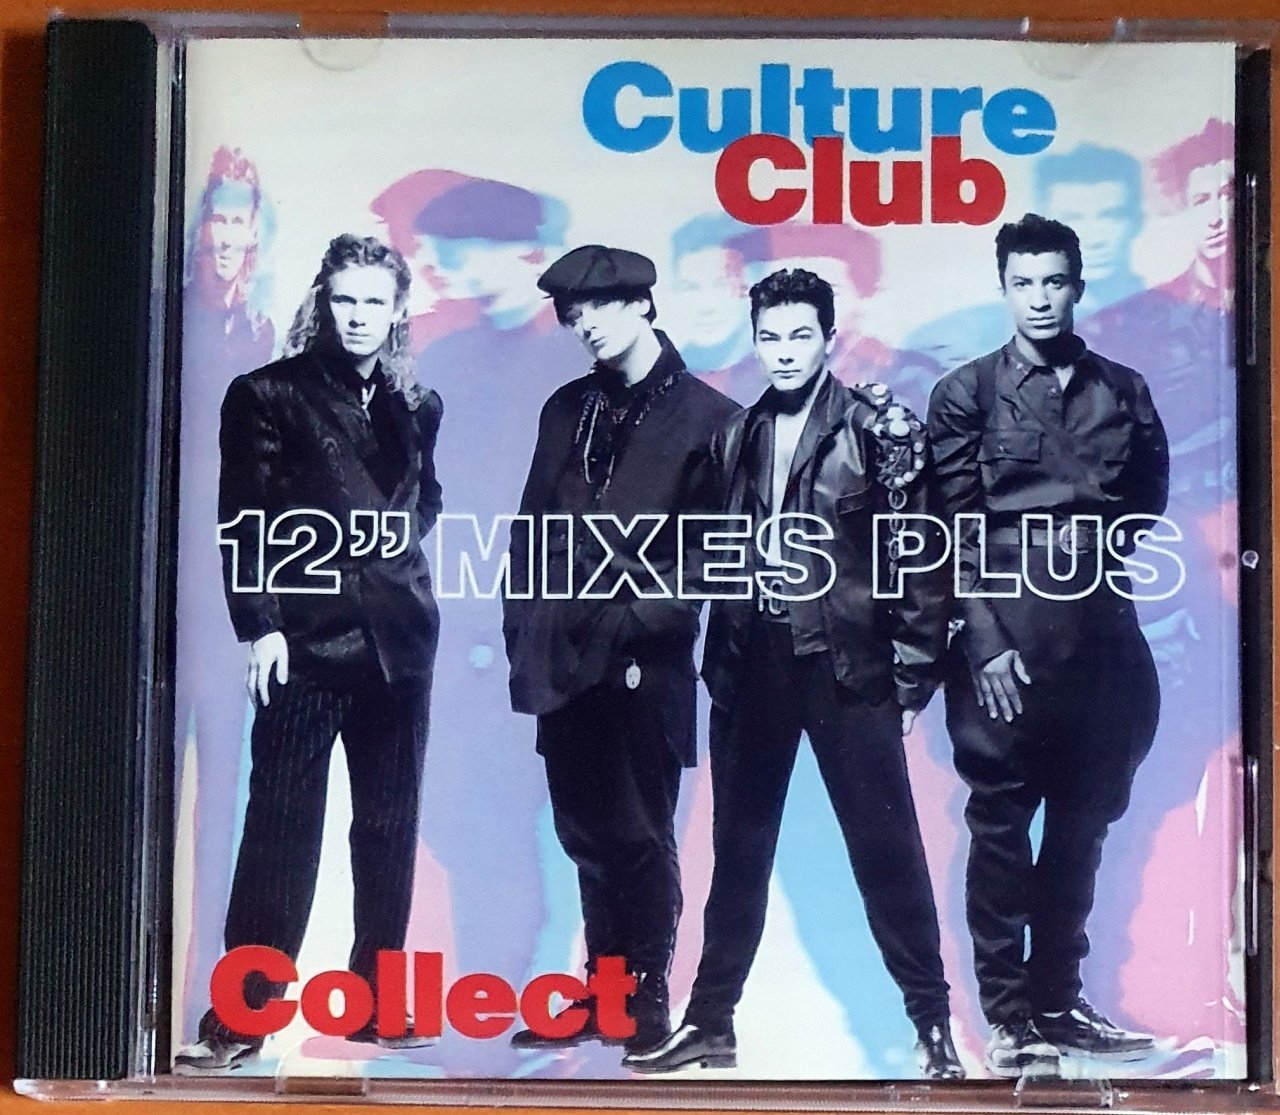 CULTURE CLUB - COLLECT / 12'' MIXES PLUS (1991) - CD 2.EL